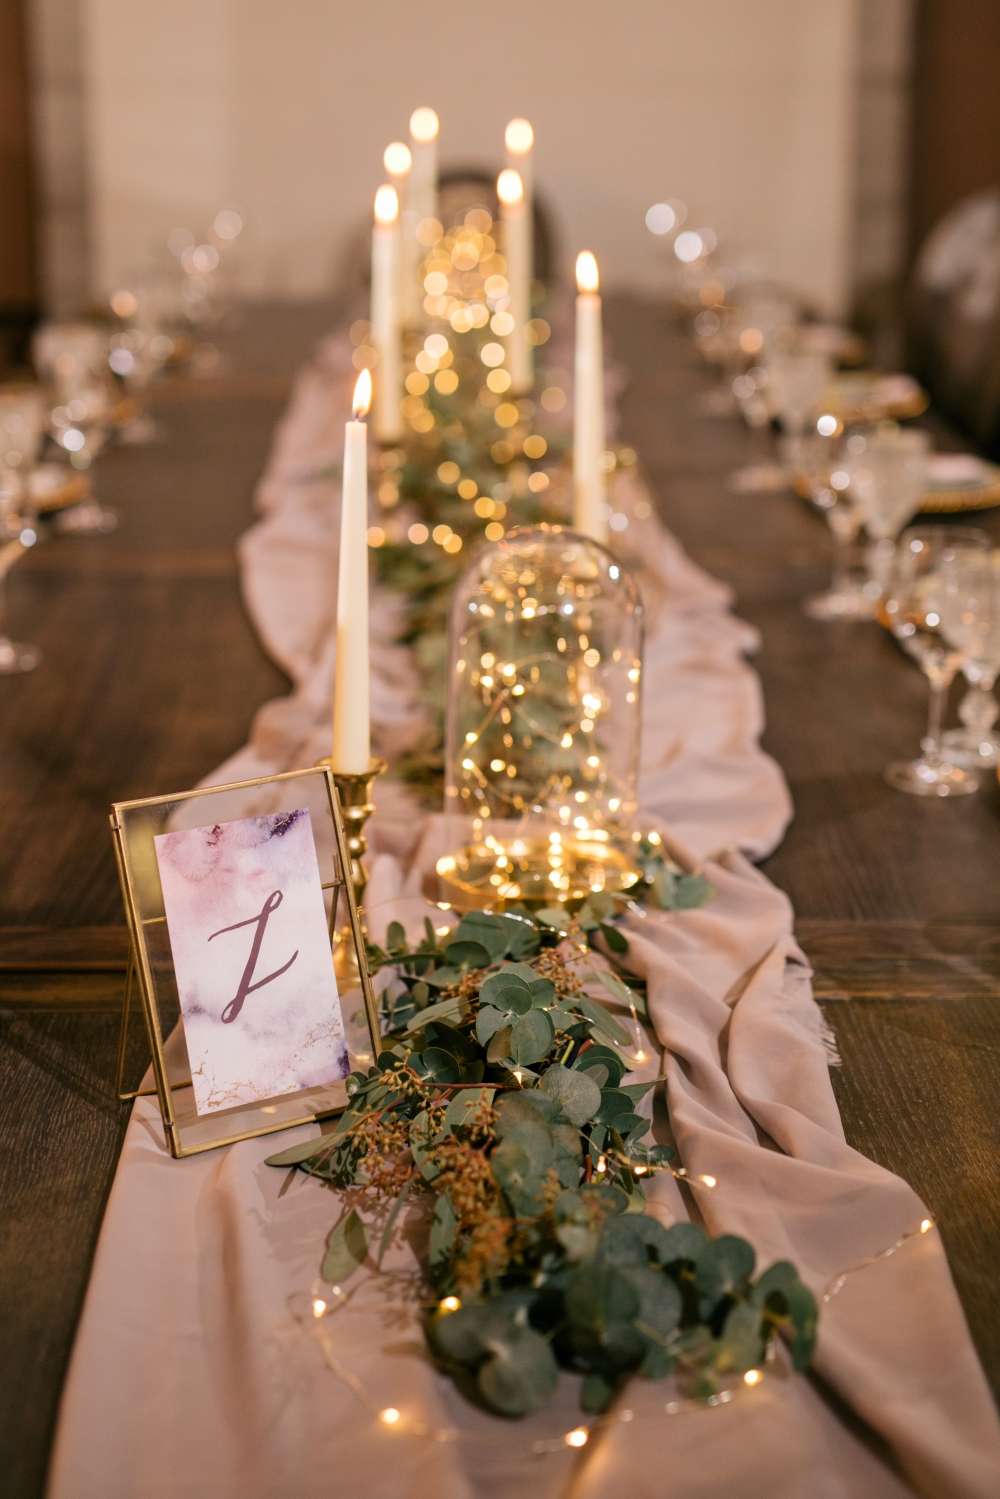 Оформление длинного деревянного стола гостей зеленью, свечами и лампочками.